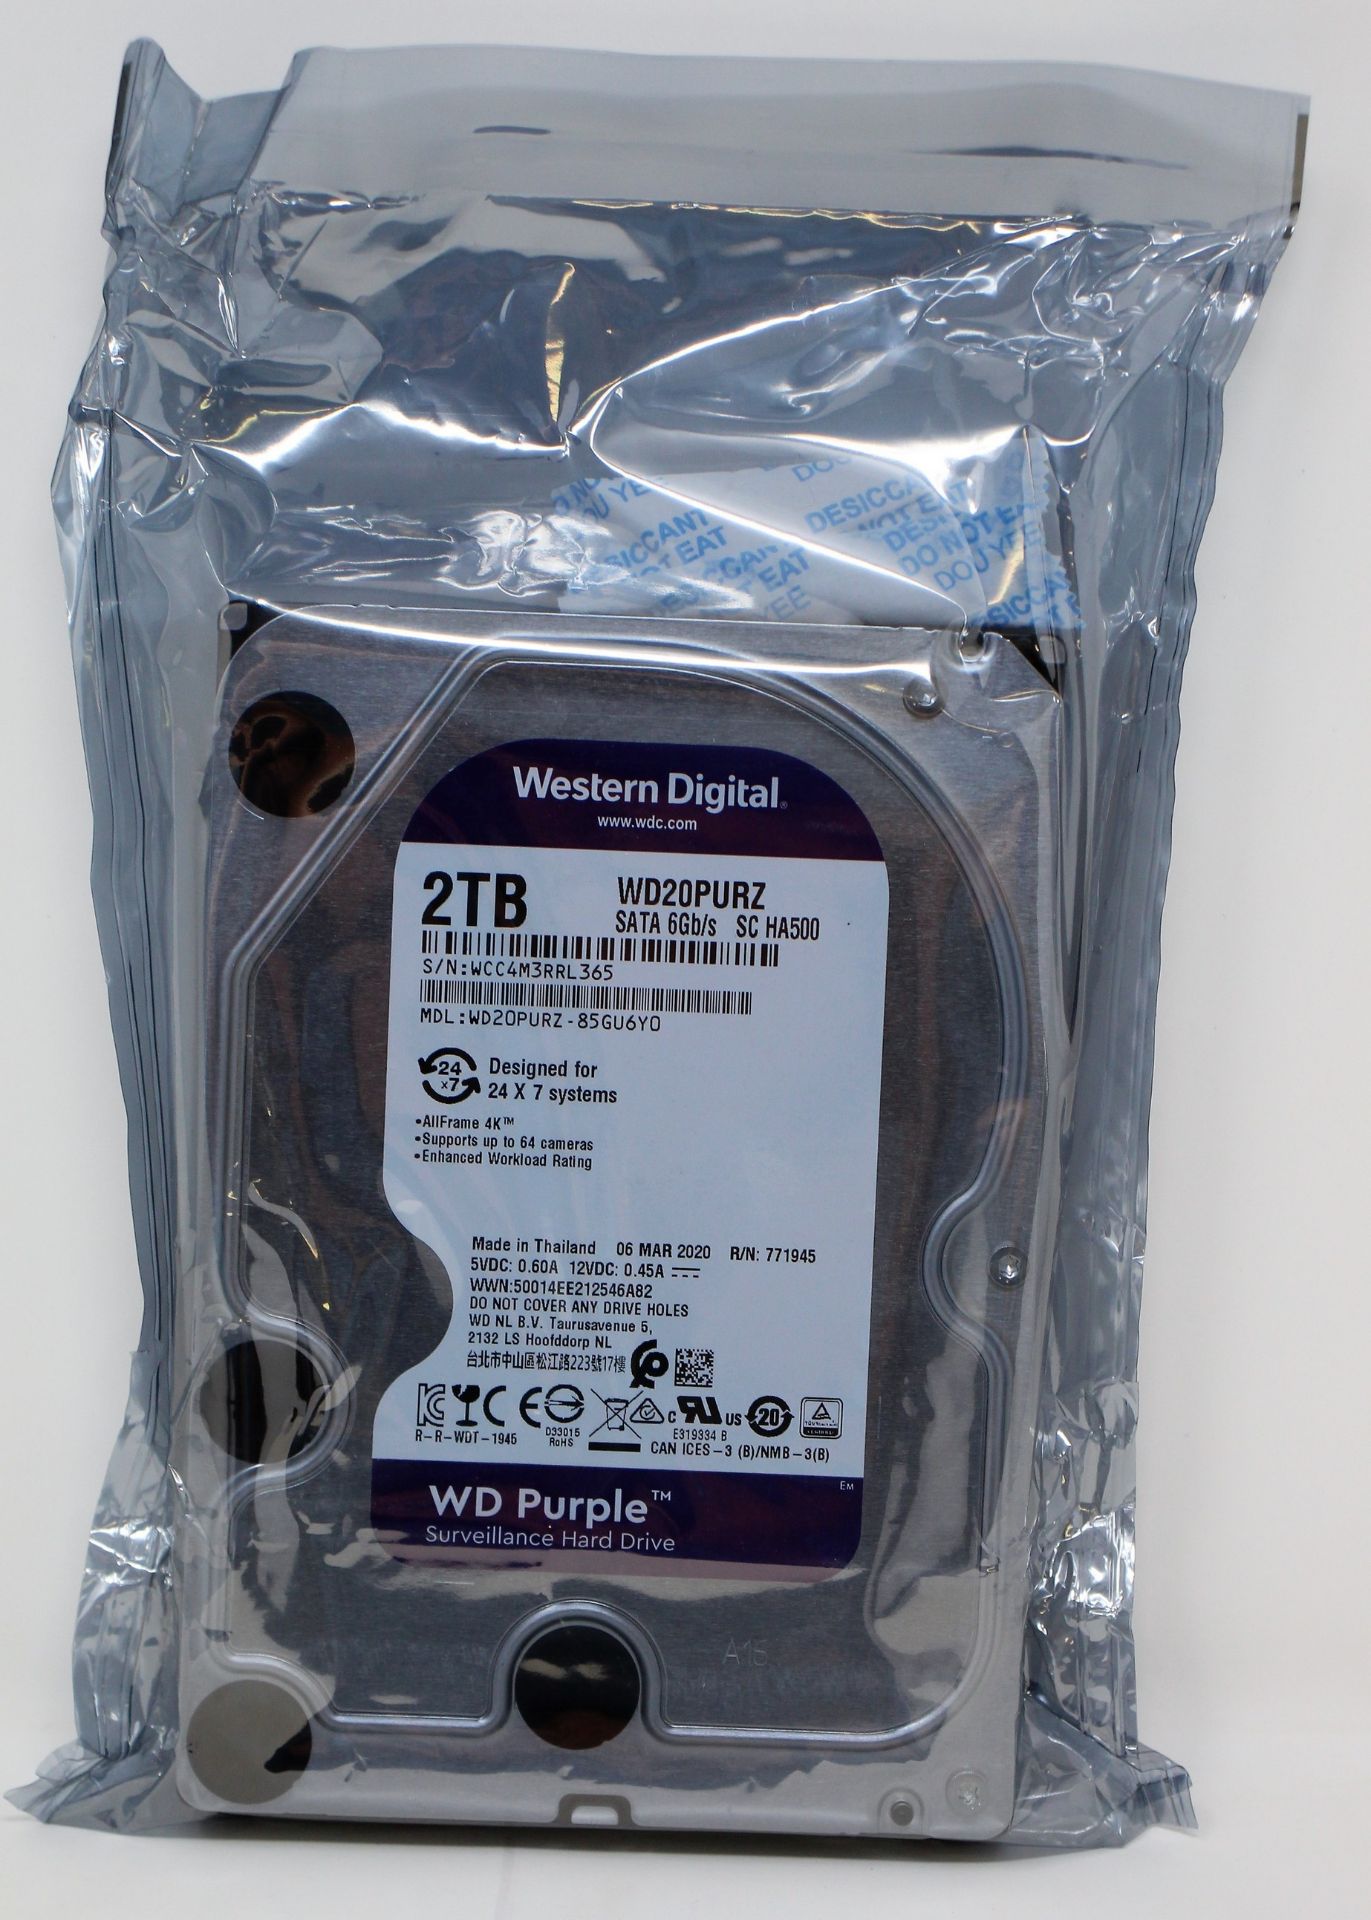 An as new Western Digital 2TB Surveillance Hard Drive (MDL: WD20PURZ-85GU6Y0) (Packaging sealed).